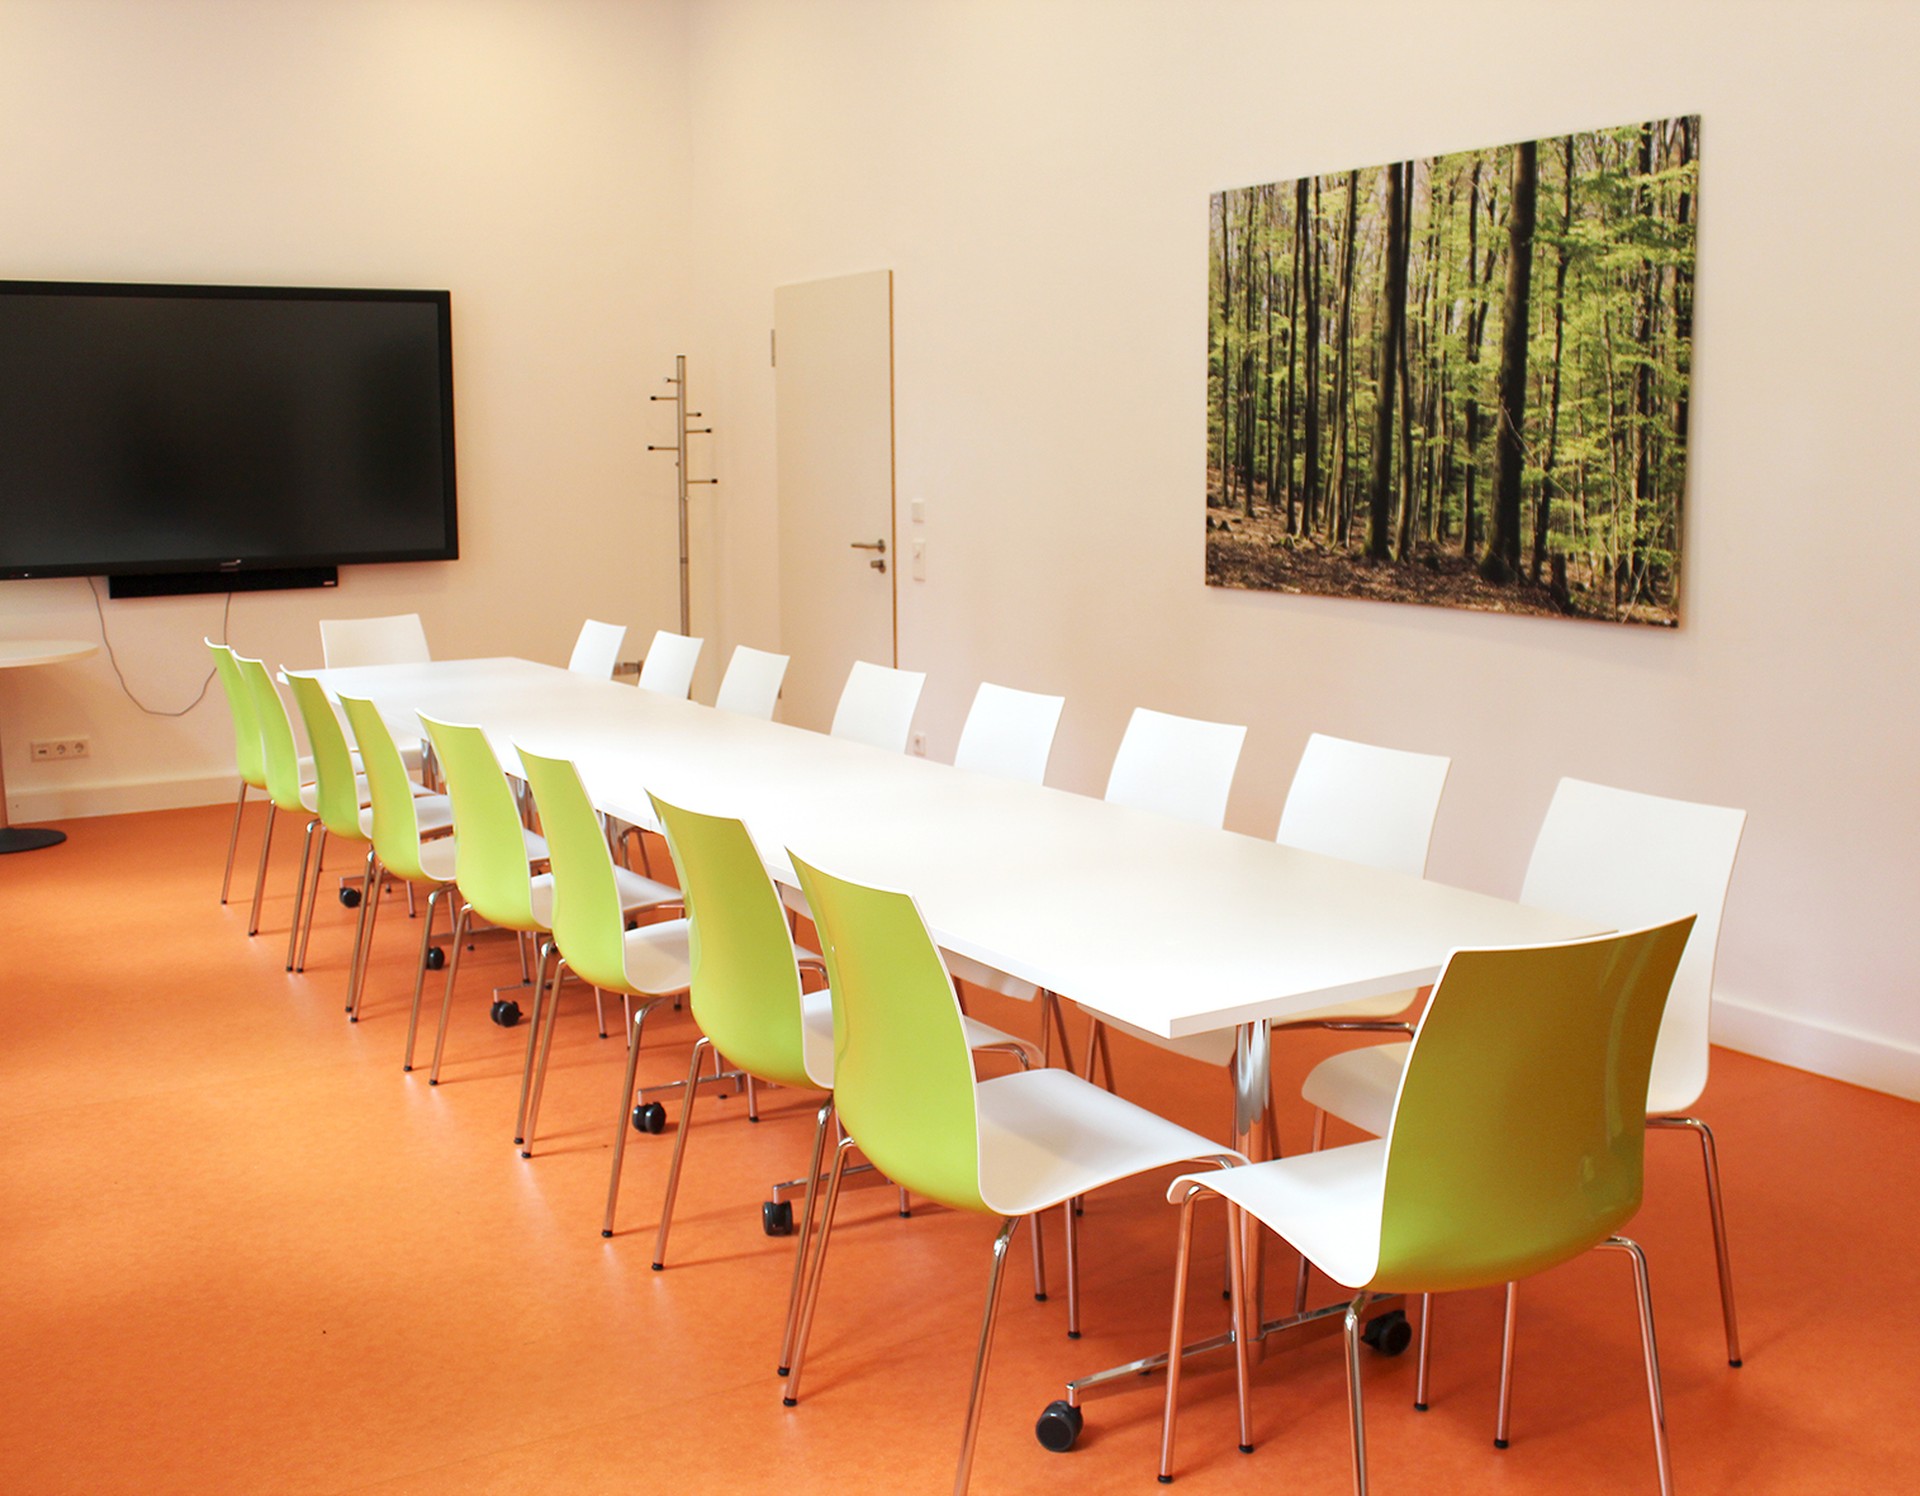 Ein Konferenzraum der Sucht-Reha mit einem großen Tisch, vielen Stühlen und einem großen Fernseher an der Wand